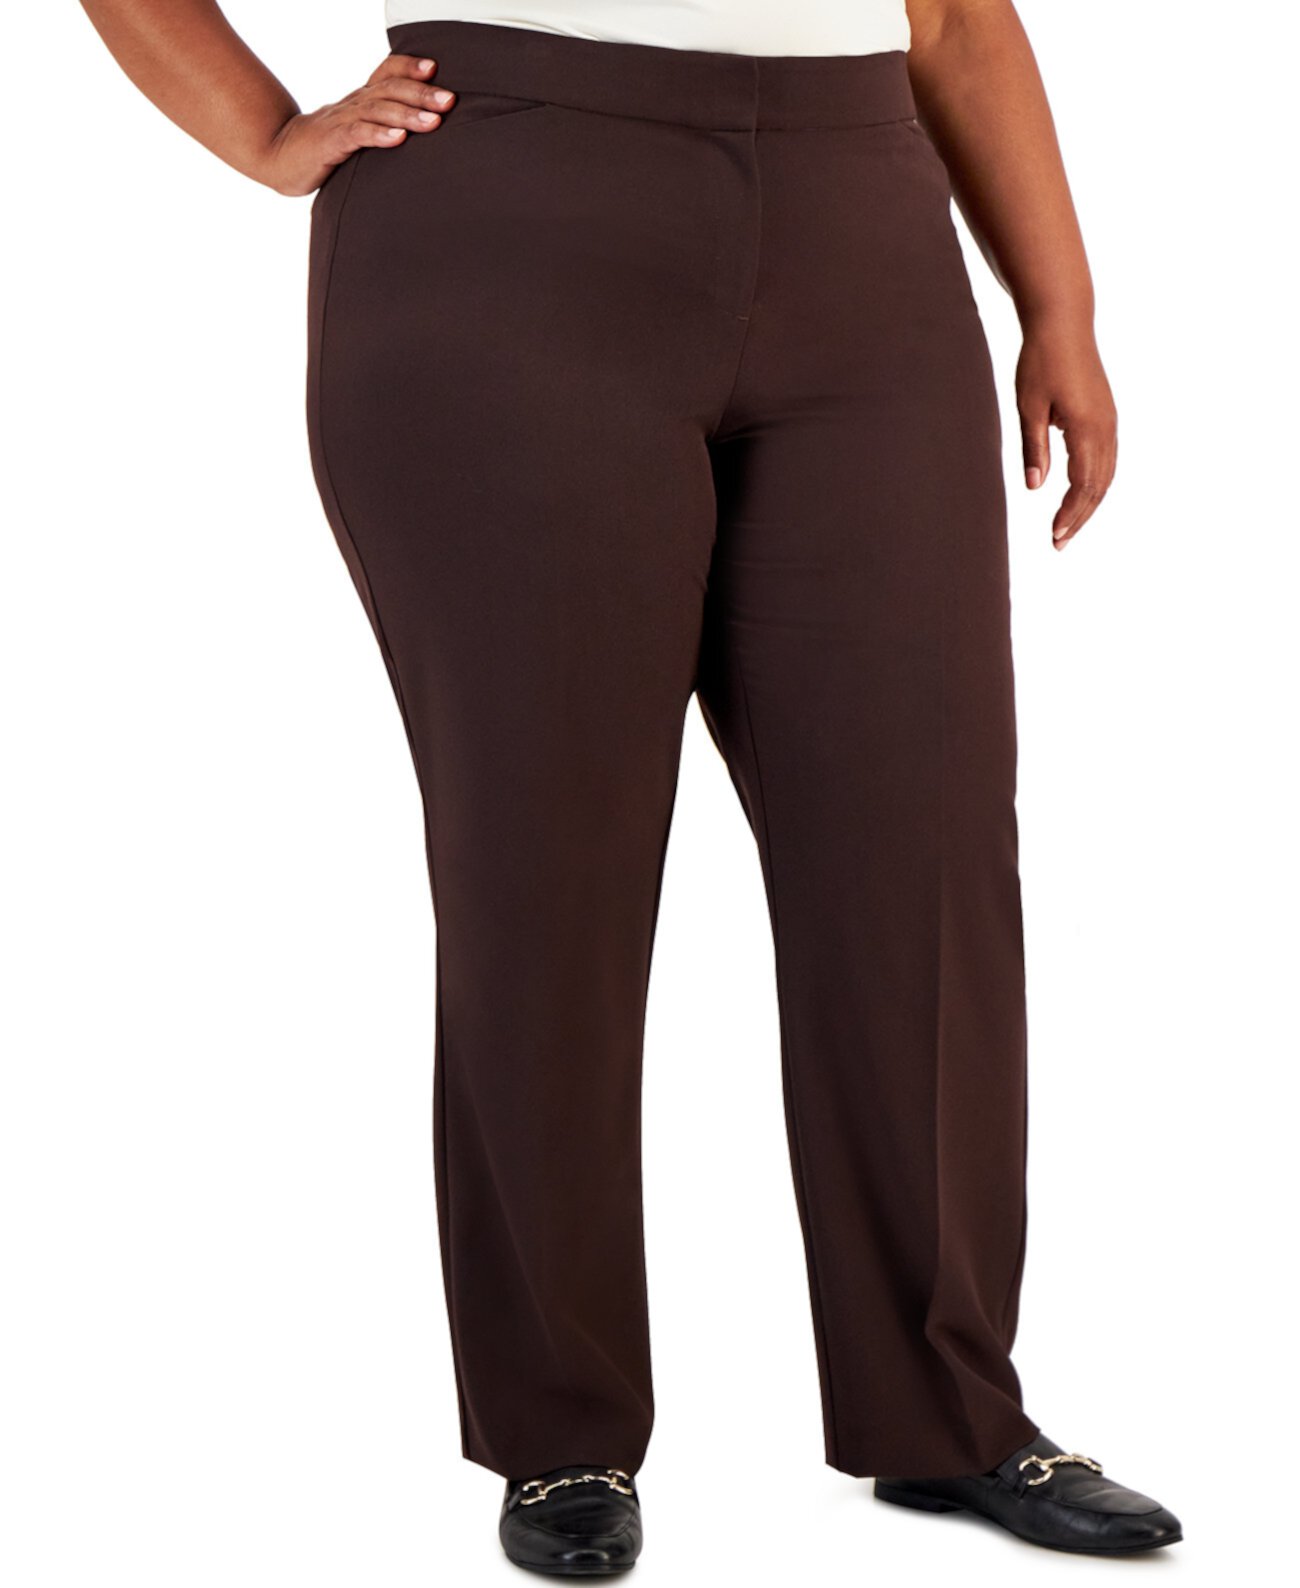 Плюс и миниатюрные пышные облегающие брюки большого размера, созданные для Macy's J&M Collection